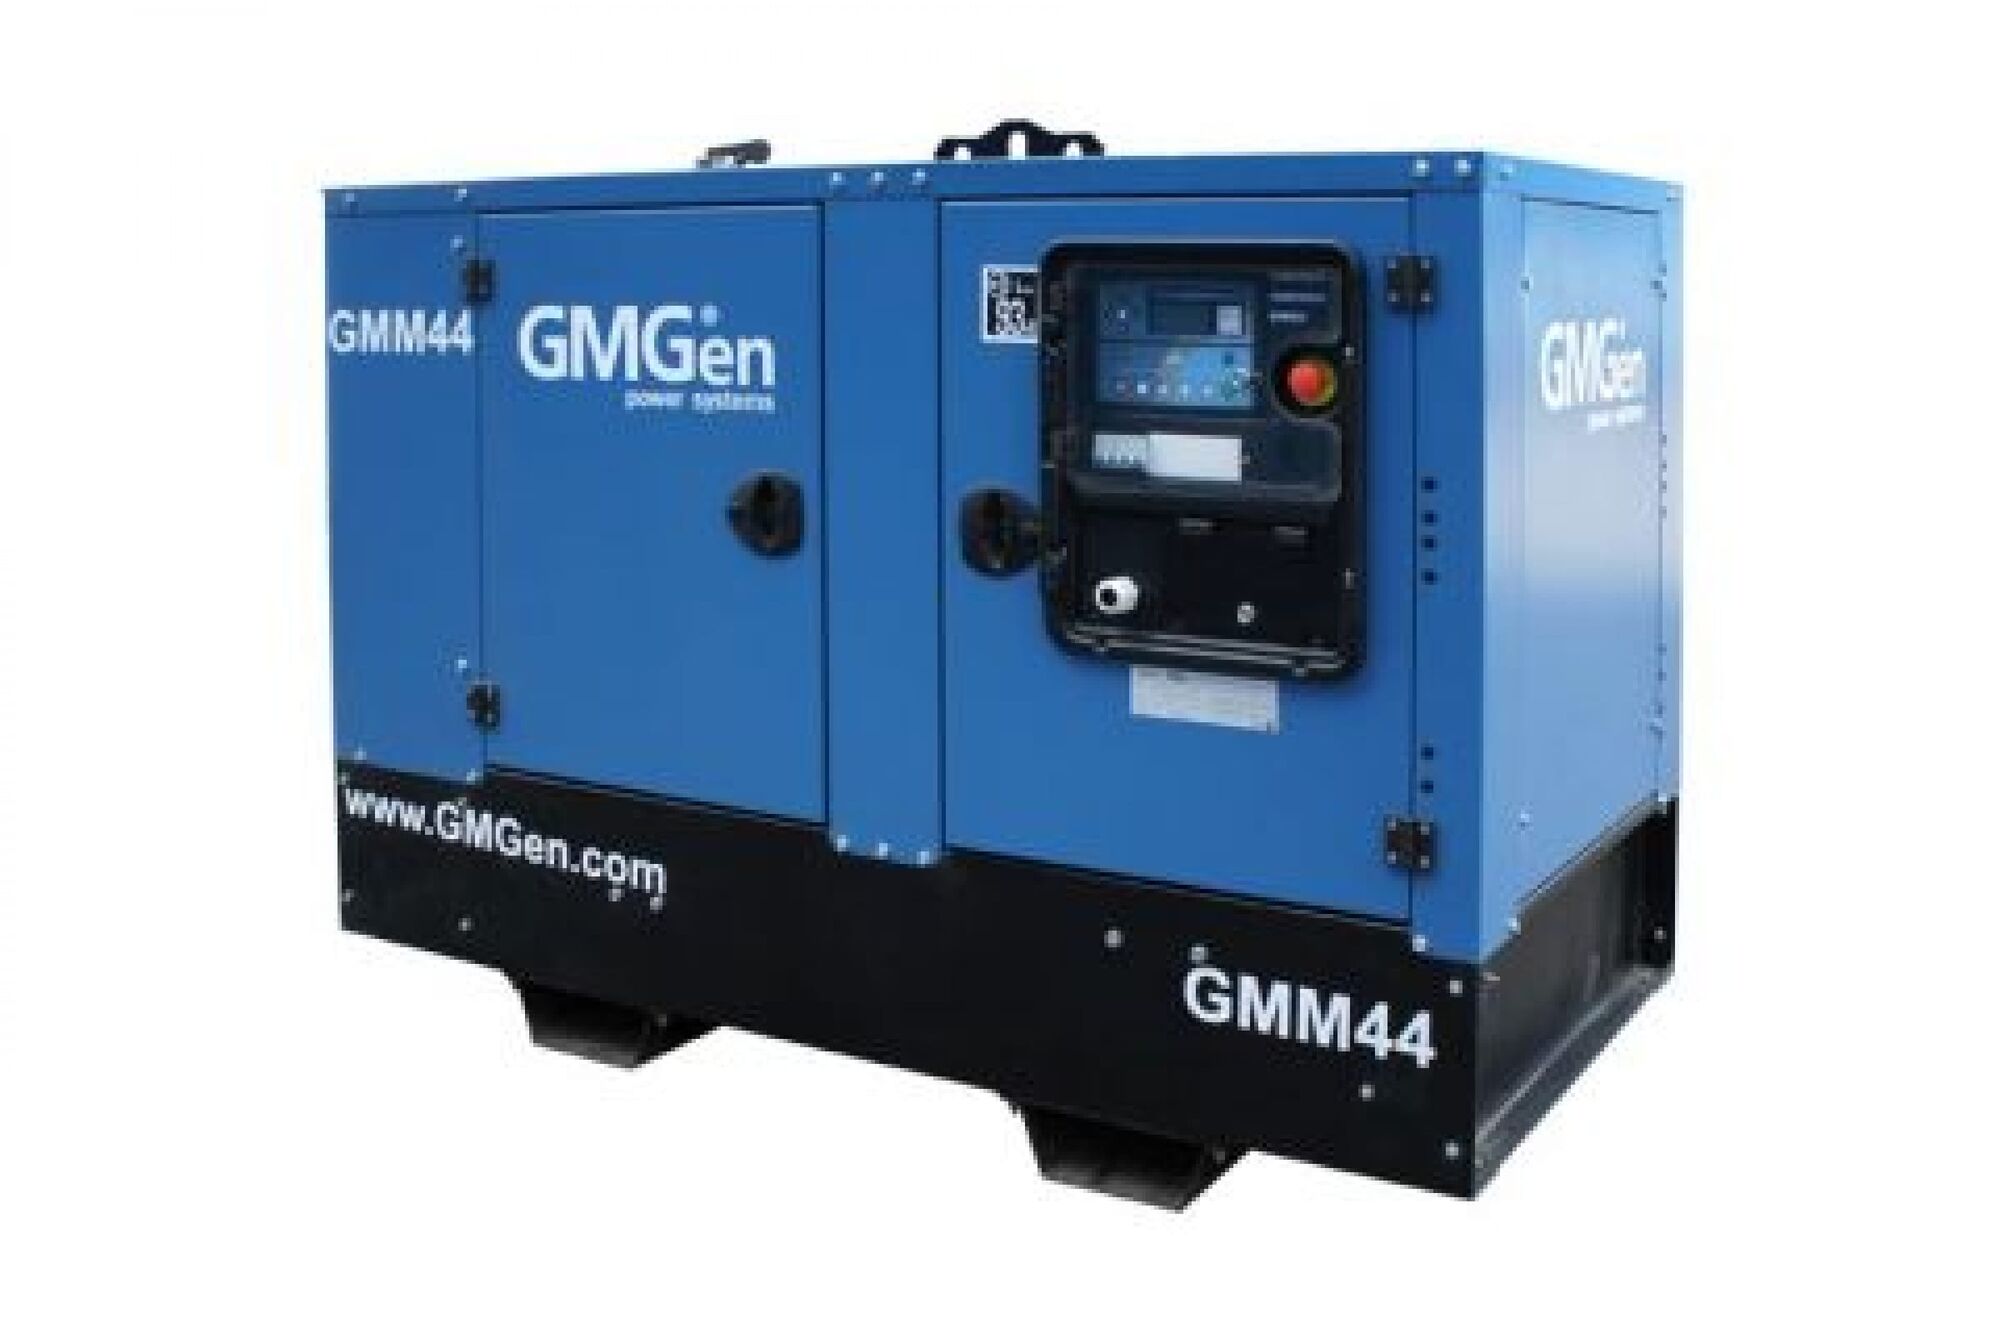 Дизель генератор GMGen Power Systems GMM44 32 кВт, 380/220 В в шумозащитном кожухе 502586